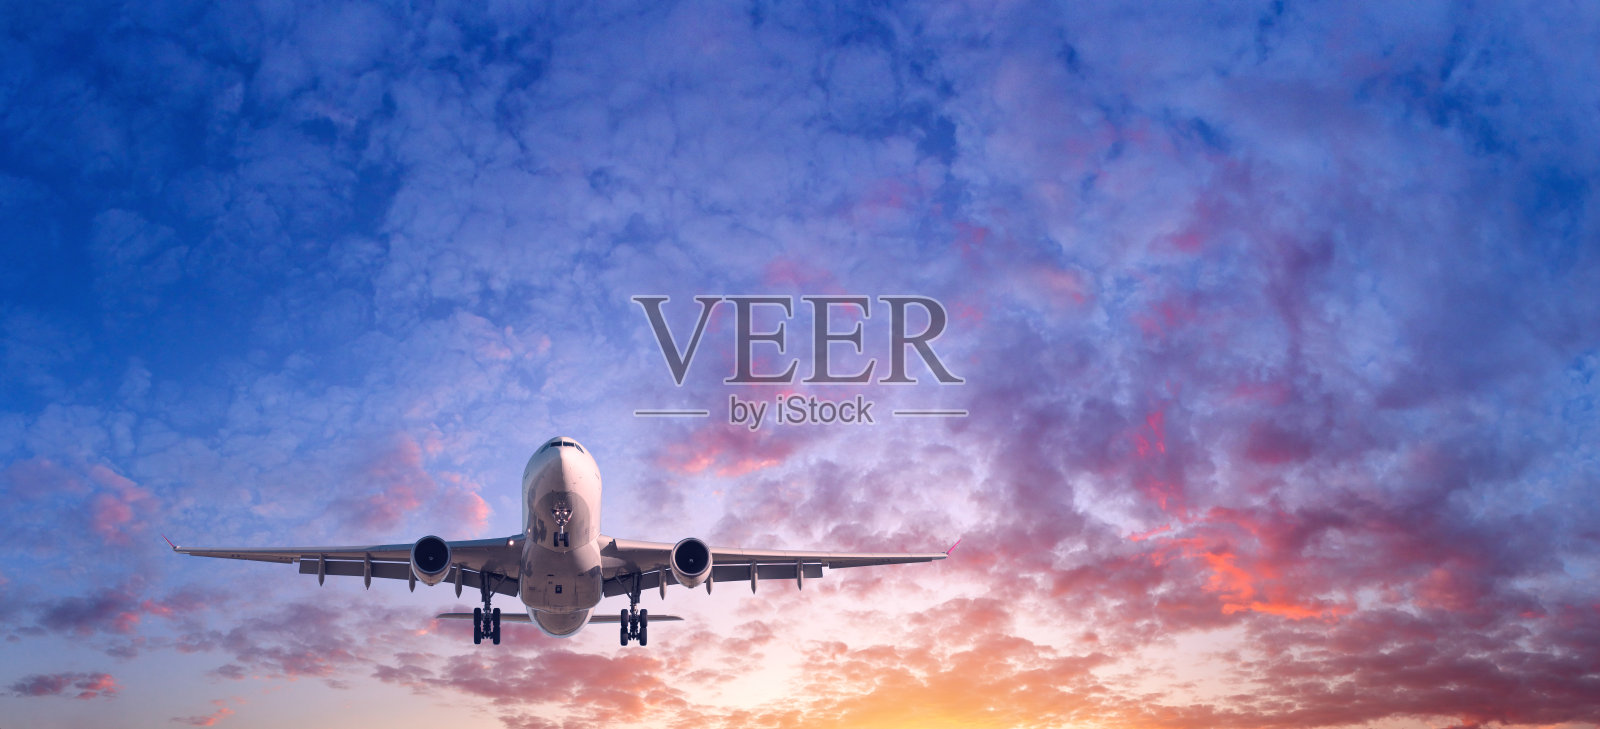 飞机着陆。落日时分，蓝天上布满了红、紫、橙三色的云雾，风景如画的客机正在飞翔。旅游的背景。客运班机。商用飞机。私人飞机照片摄影图片